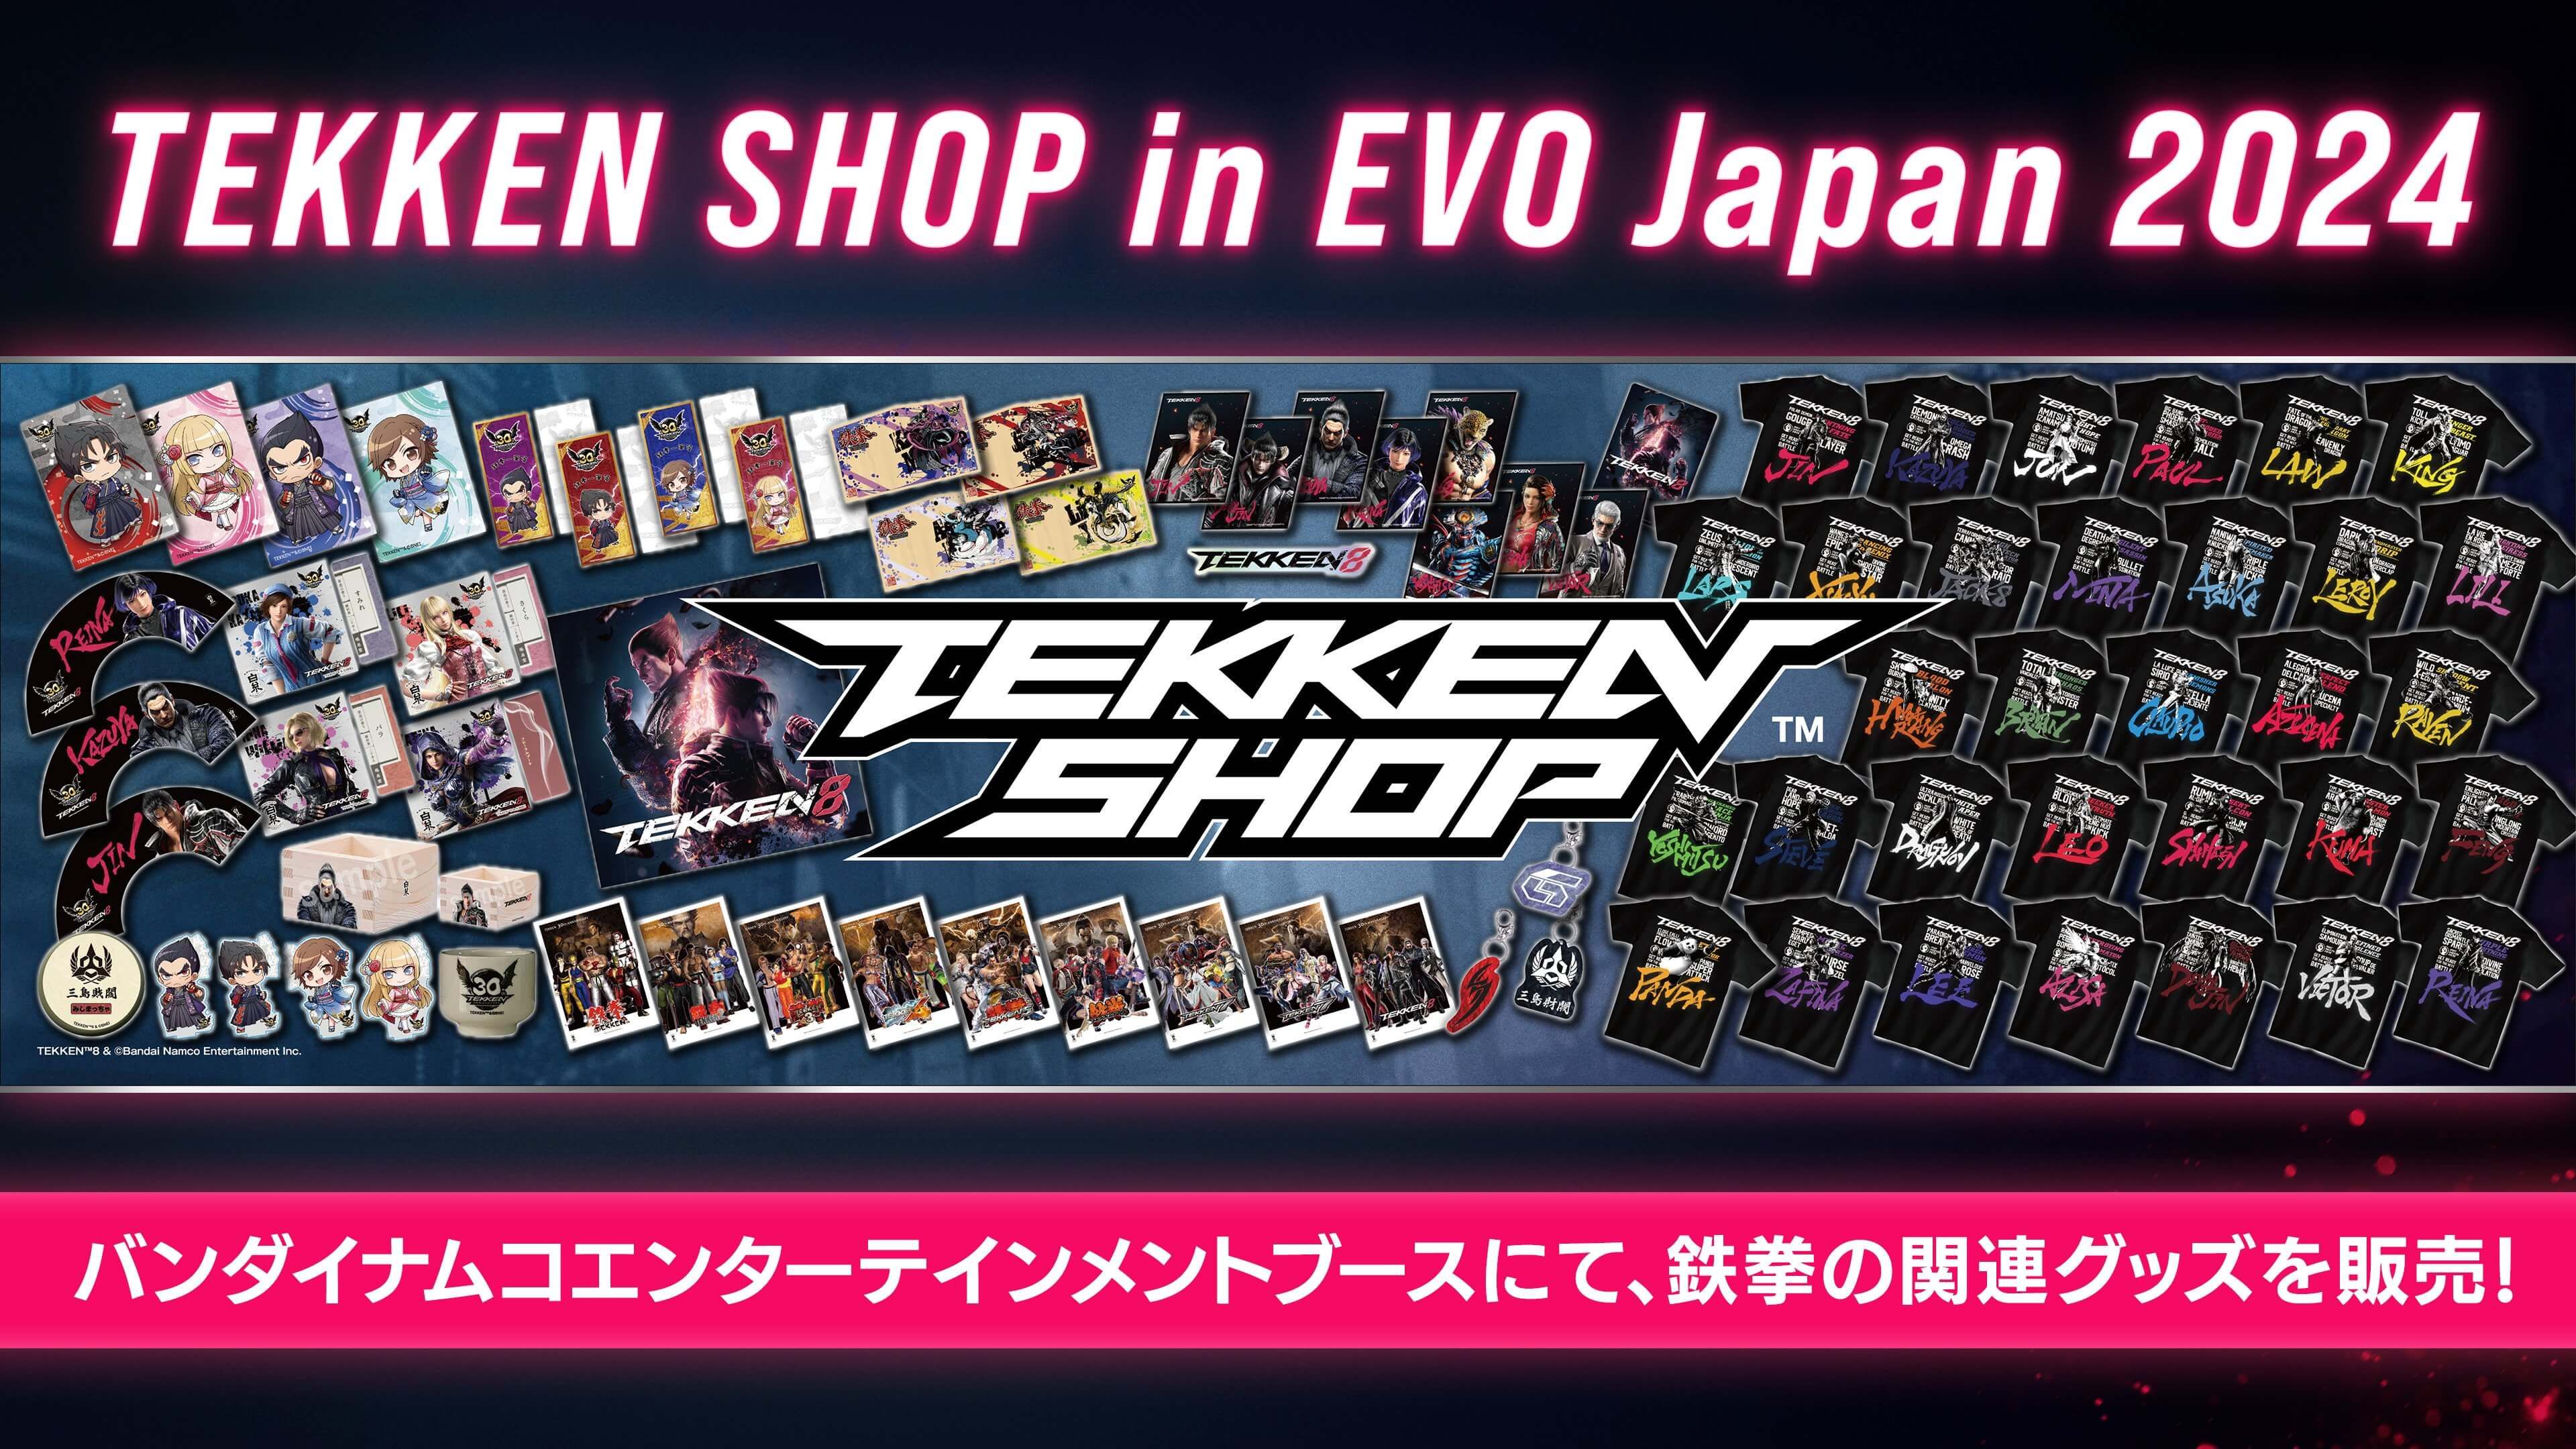 Tekken 8 Merch Shop Will be Open at Evo Japan 2024